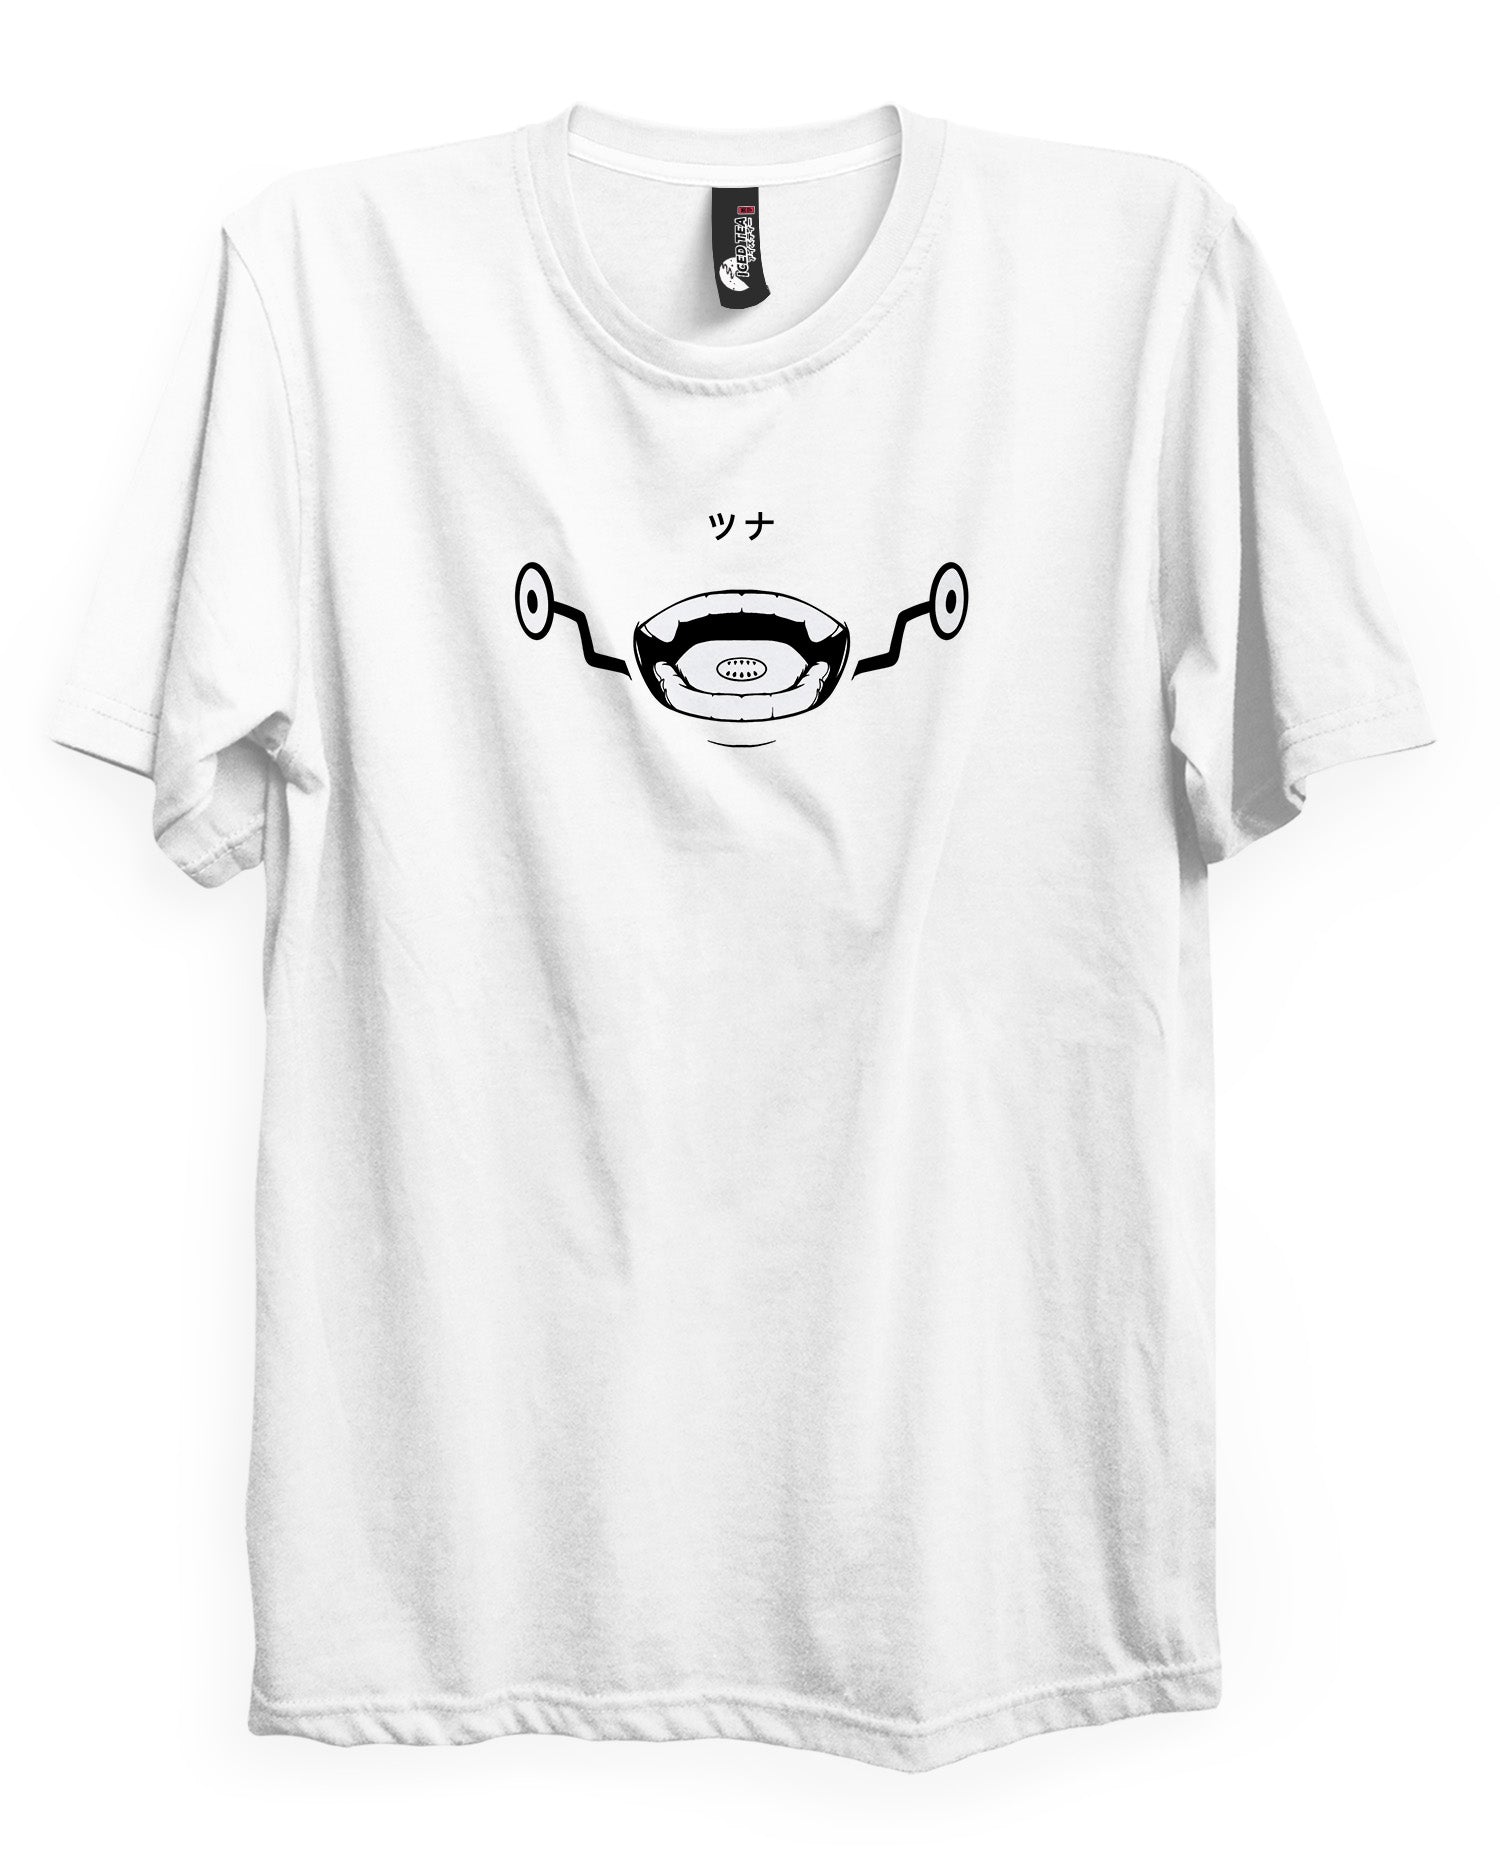 Toge (Tuna) - T-Shirt